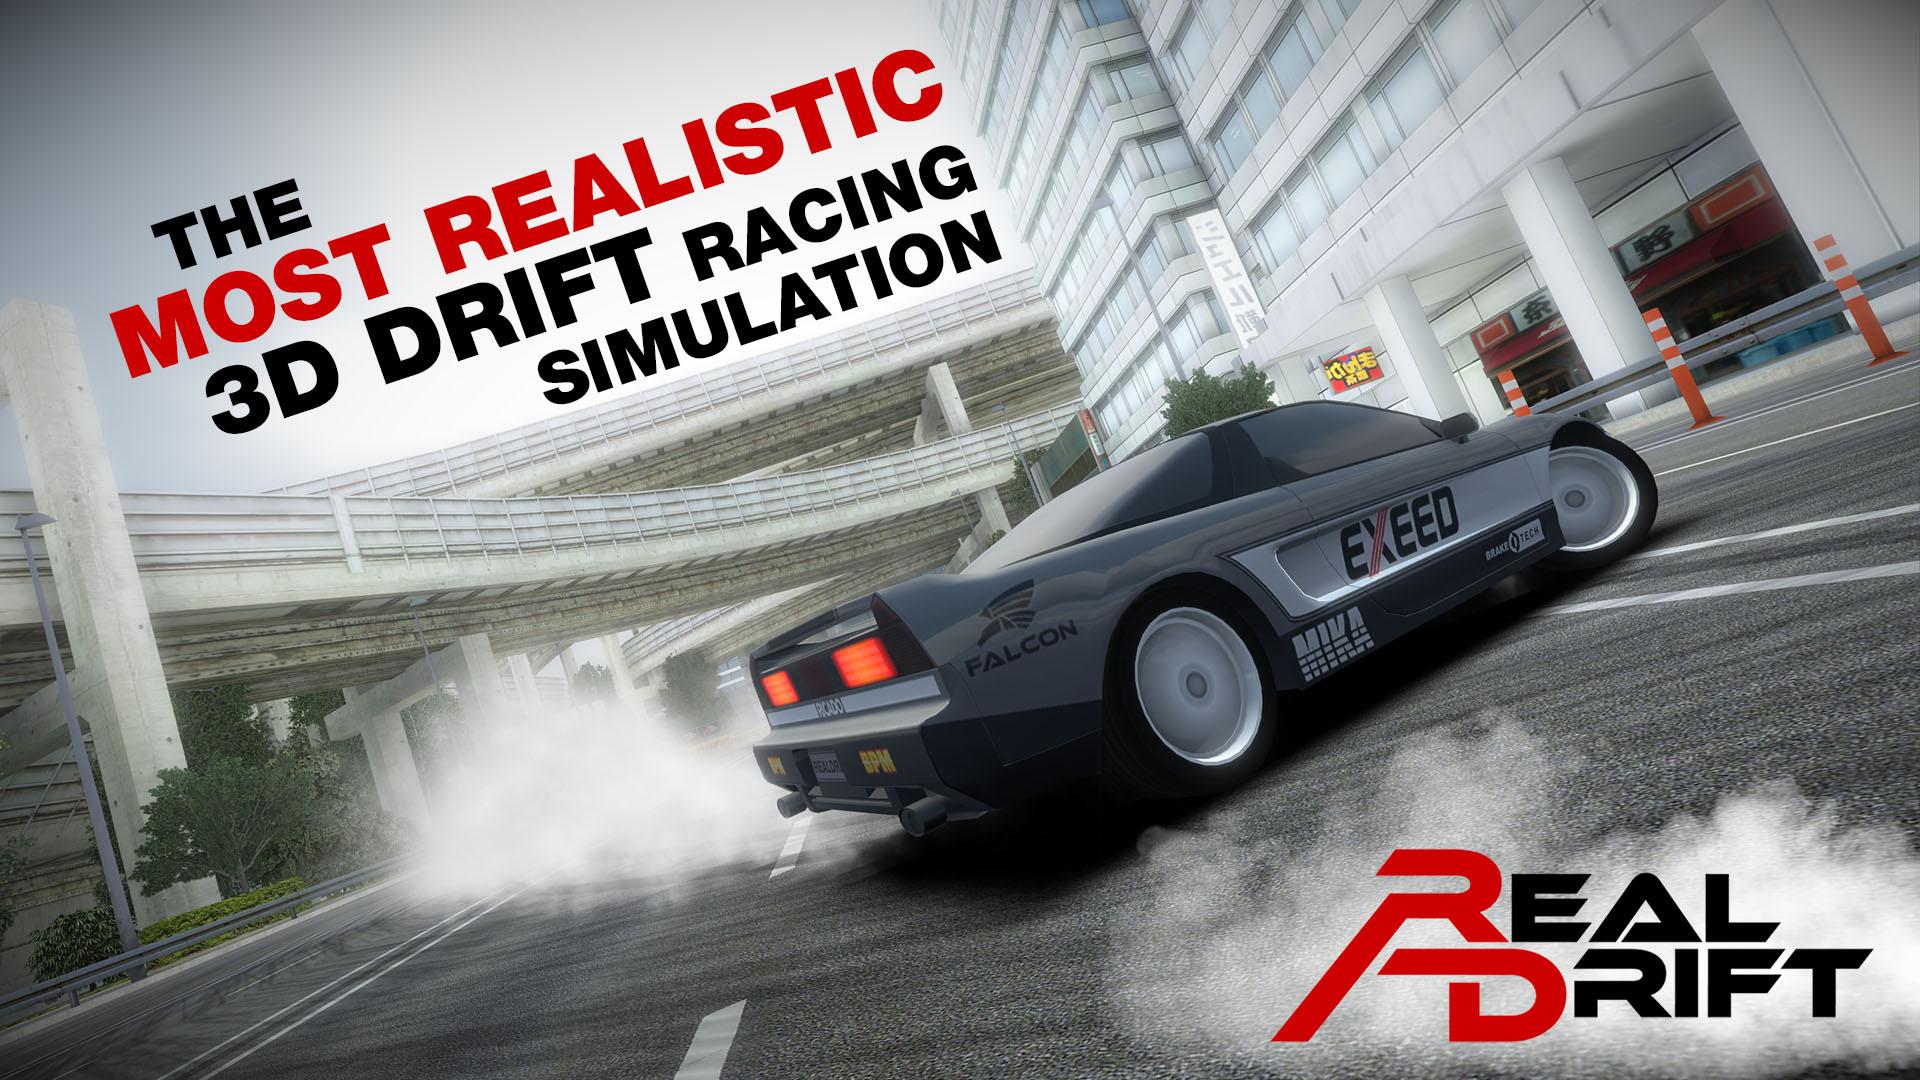 Baixar & Jogar Real Drift Car Racing no PC & Mac (Emulador)